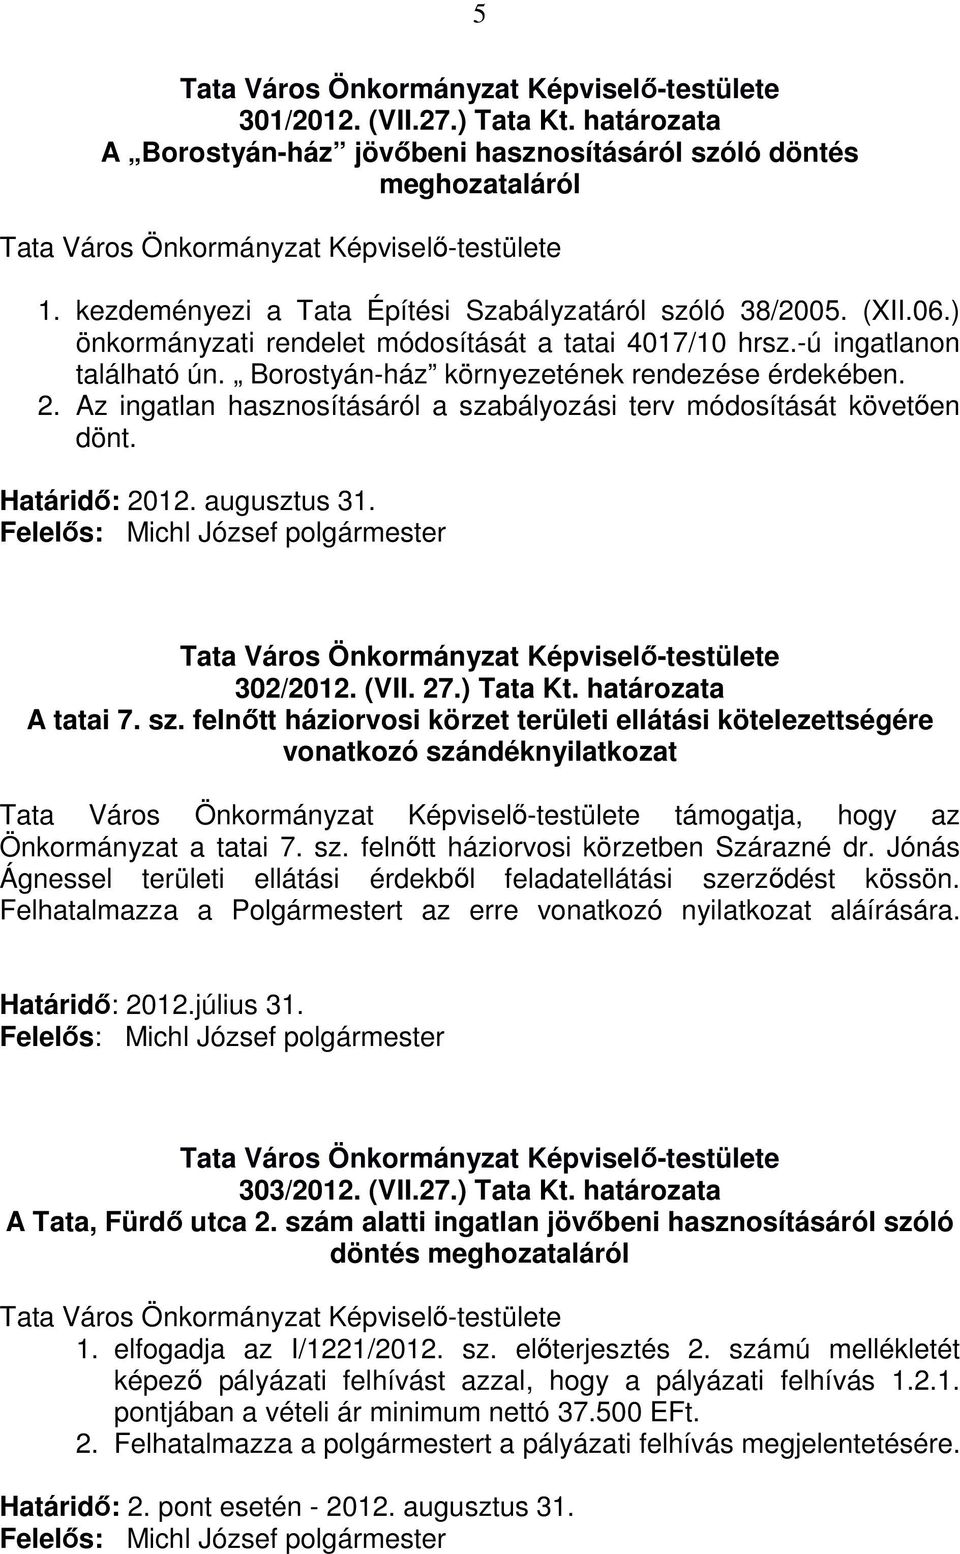 Az ingatlan hasznosításáról a szabályozási terv módosítását követően dönt. Határidő: 2012. augusztus 31. 302/2012. (VII. 27.) Tata Kt. határozata A tatai 7. sz. felnőtt háziorvosi körzet területi ellátási kötelezettségére vonatkozó szándéknyilatkozat támogatja, hogy az Önkormányzat a tatai 7.